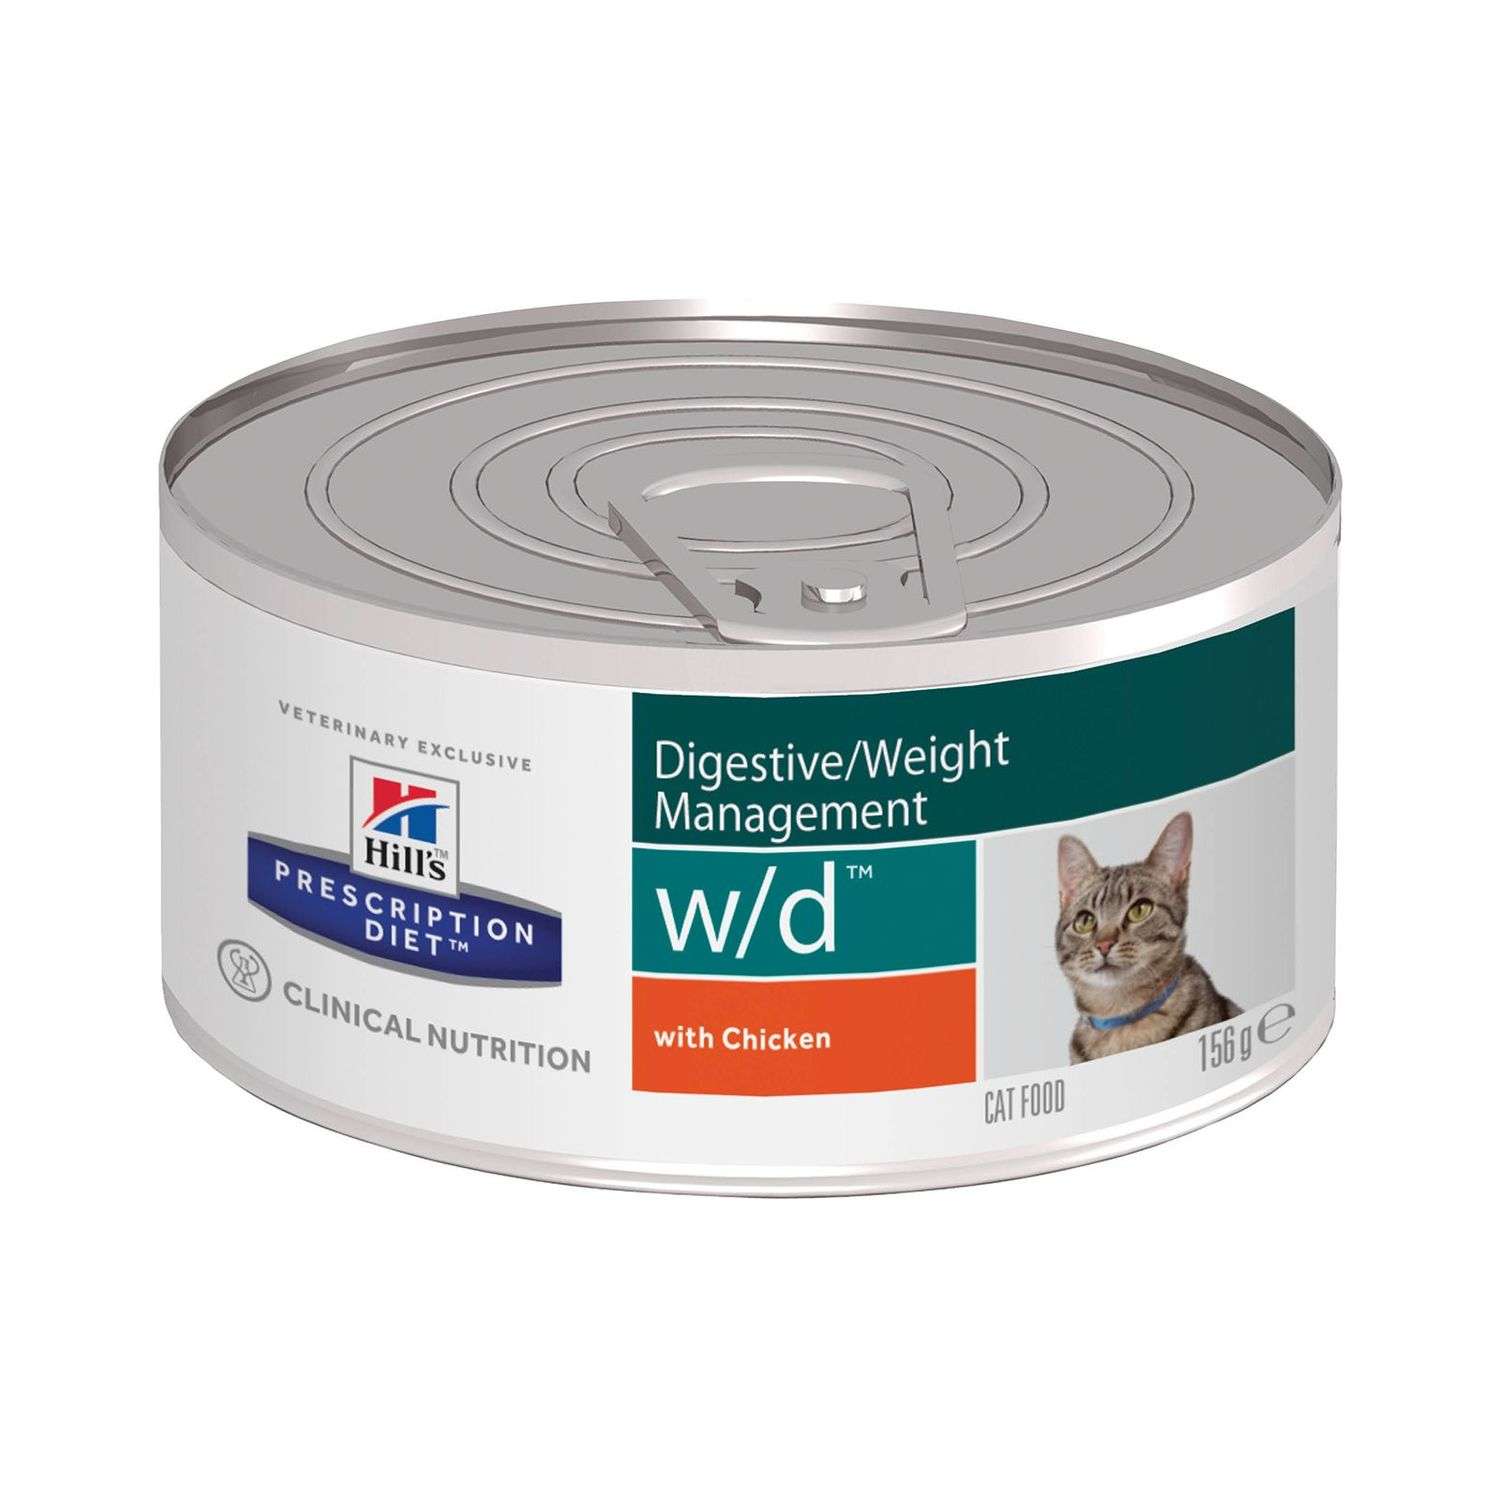 Корм для кошек HILLS 156г Prescription Diet w/d Digestive/Weight Management при сахарном диабете с курицей консервированный - фото 1